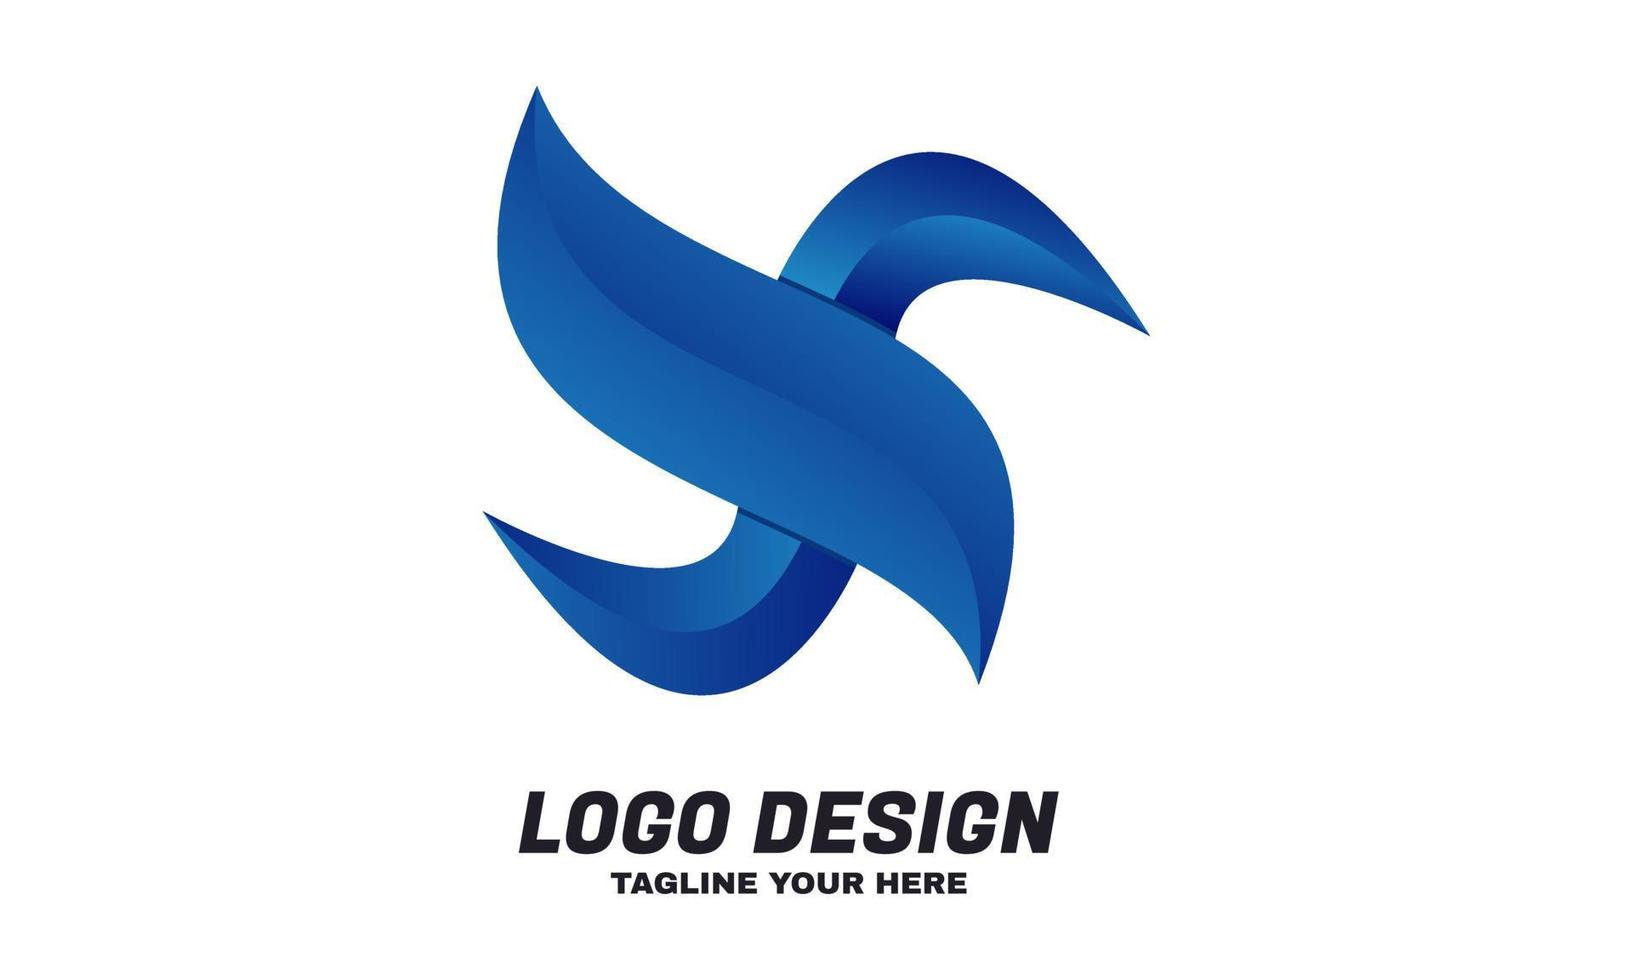 Aktienvektor digital für Firmen- oder Geschäftsdesign-Logo-Vorlagenvektor vektor